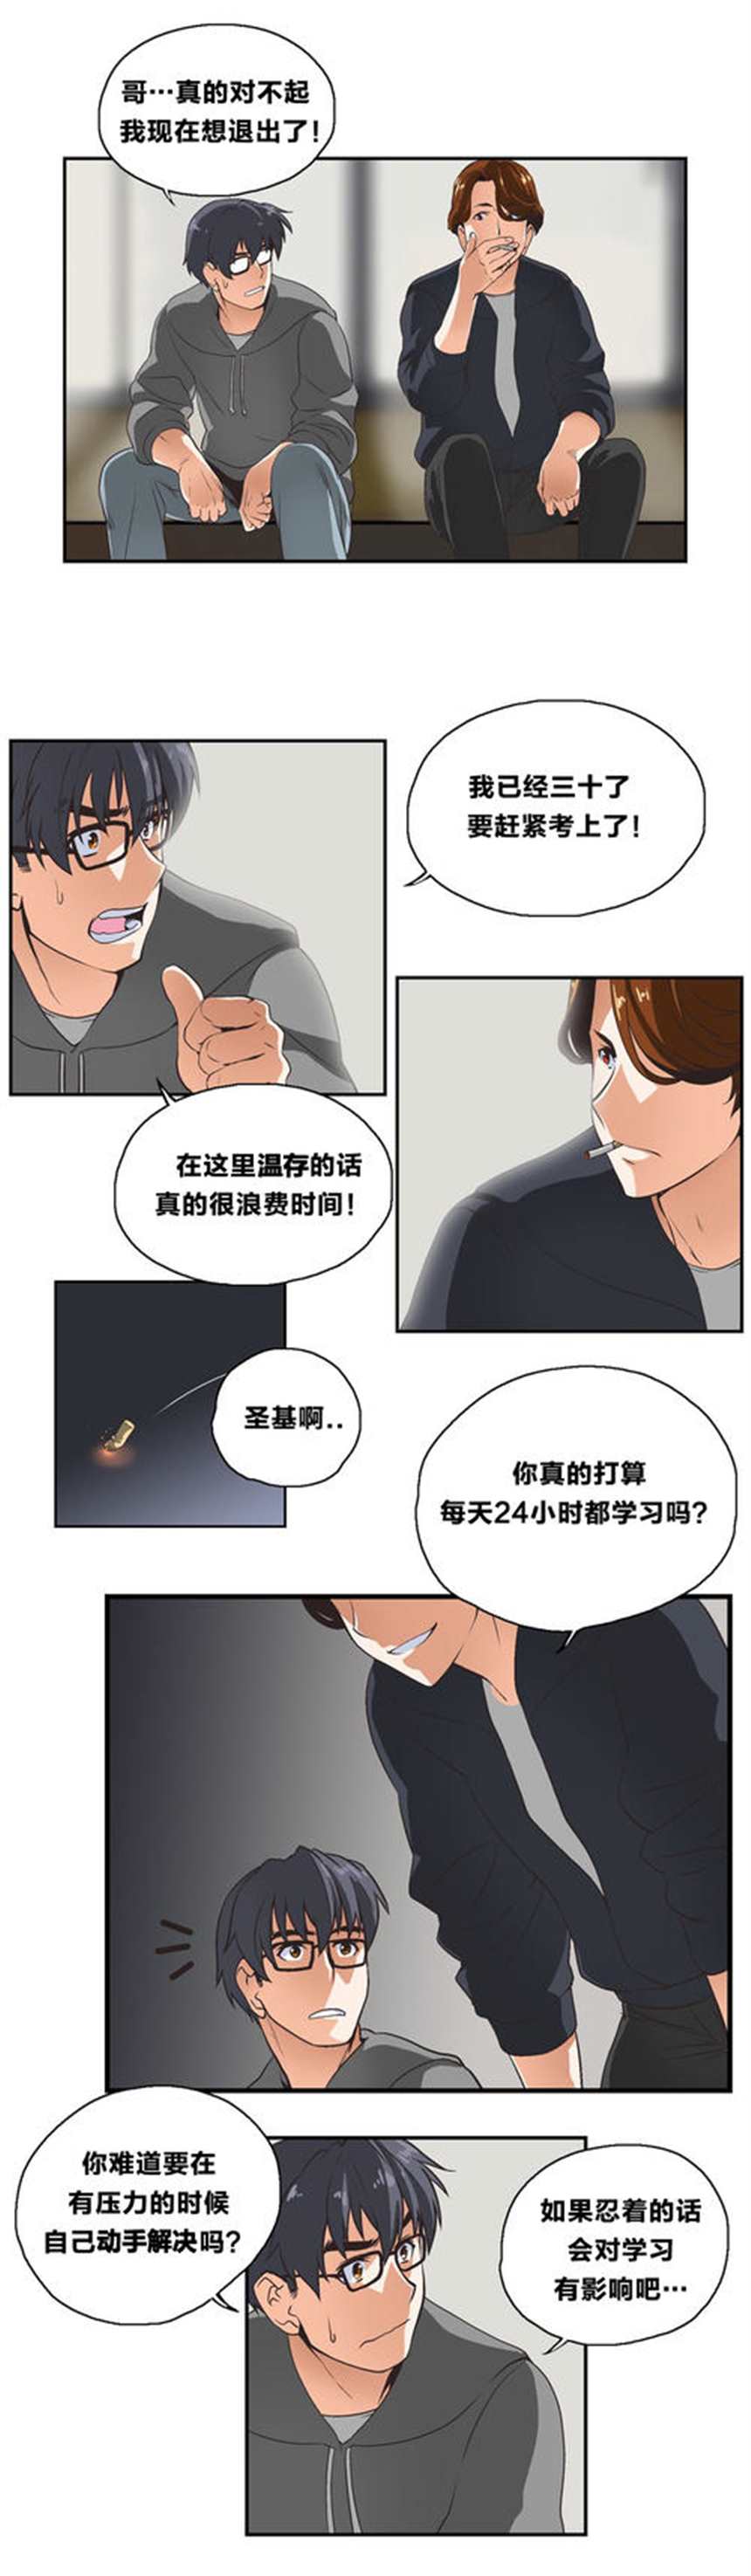 韩国漫画脱单秘籍无删减(11)(点击浏览下一张趣图)